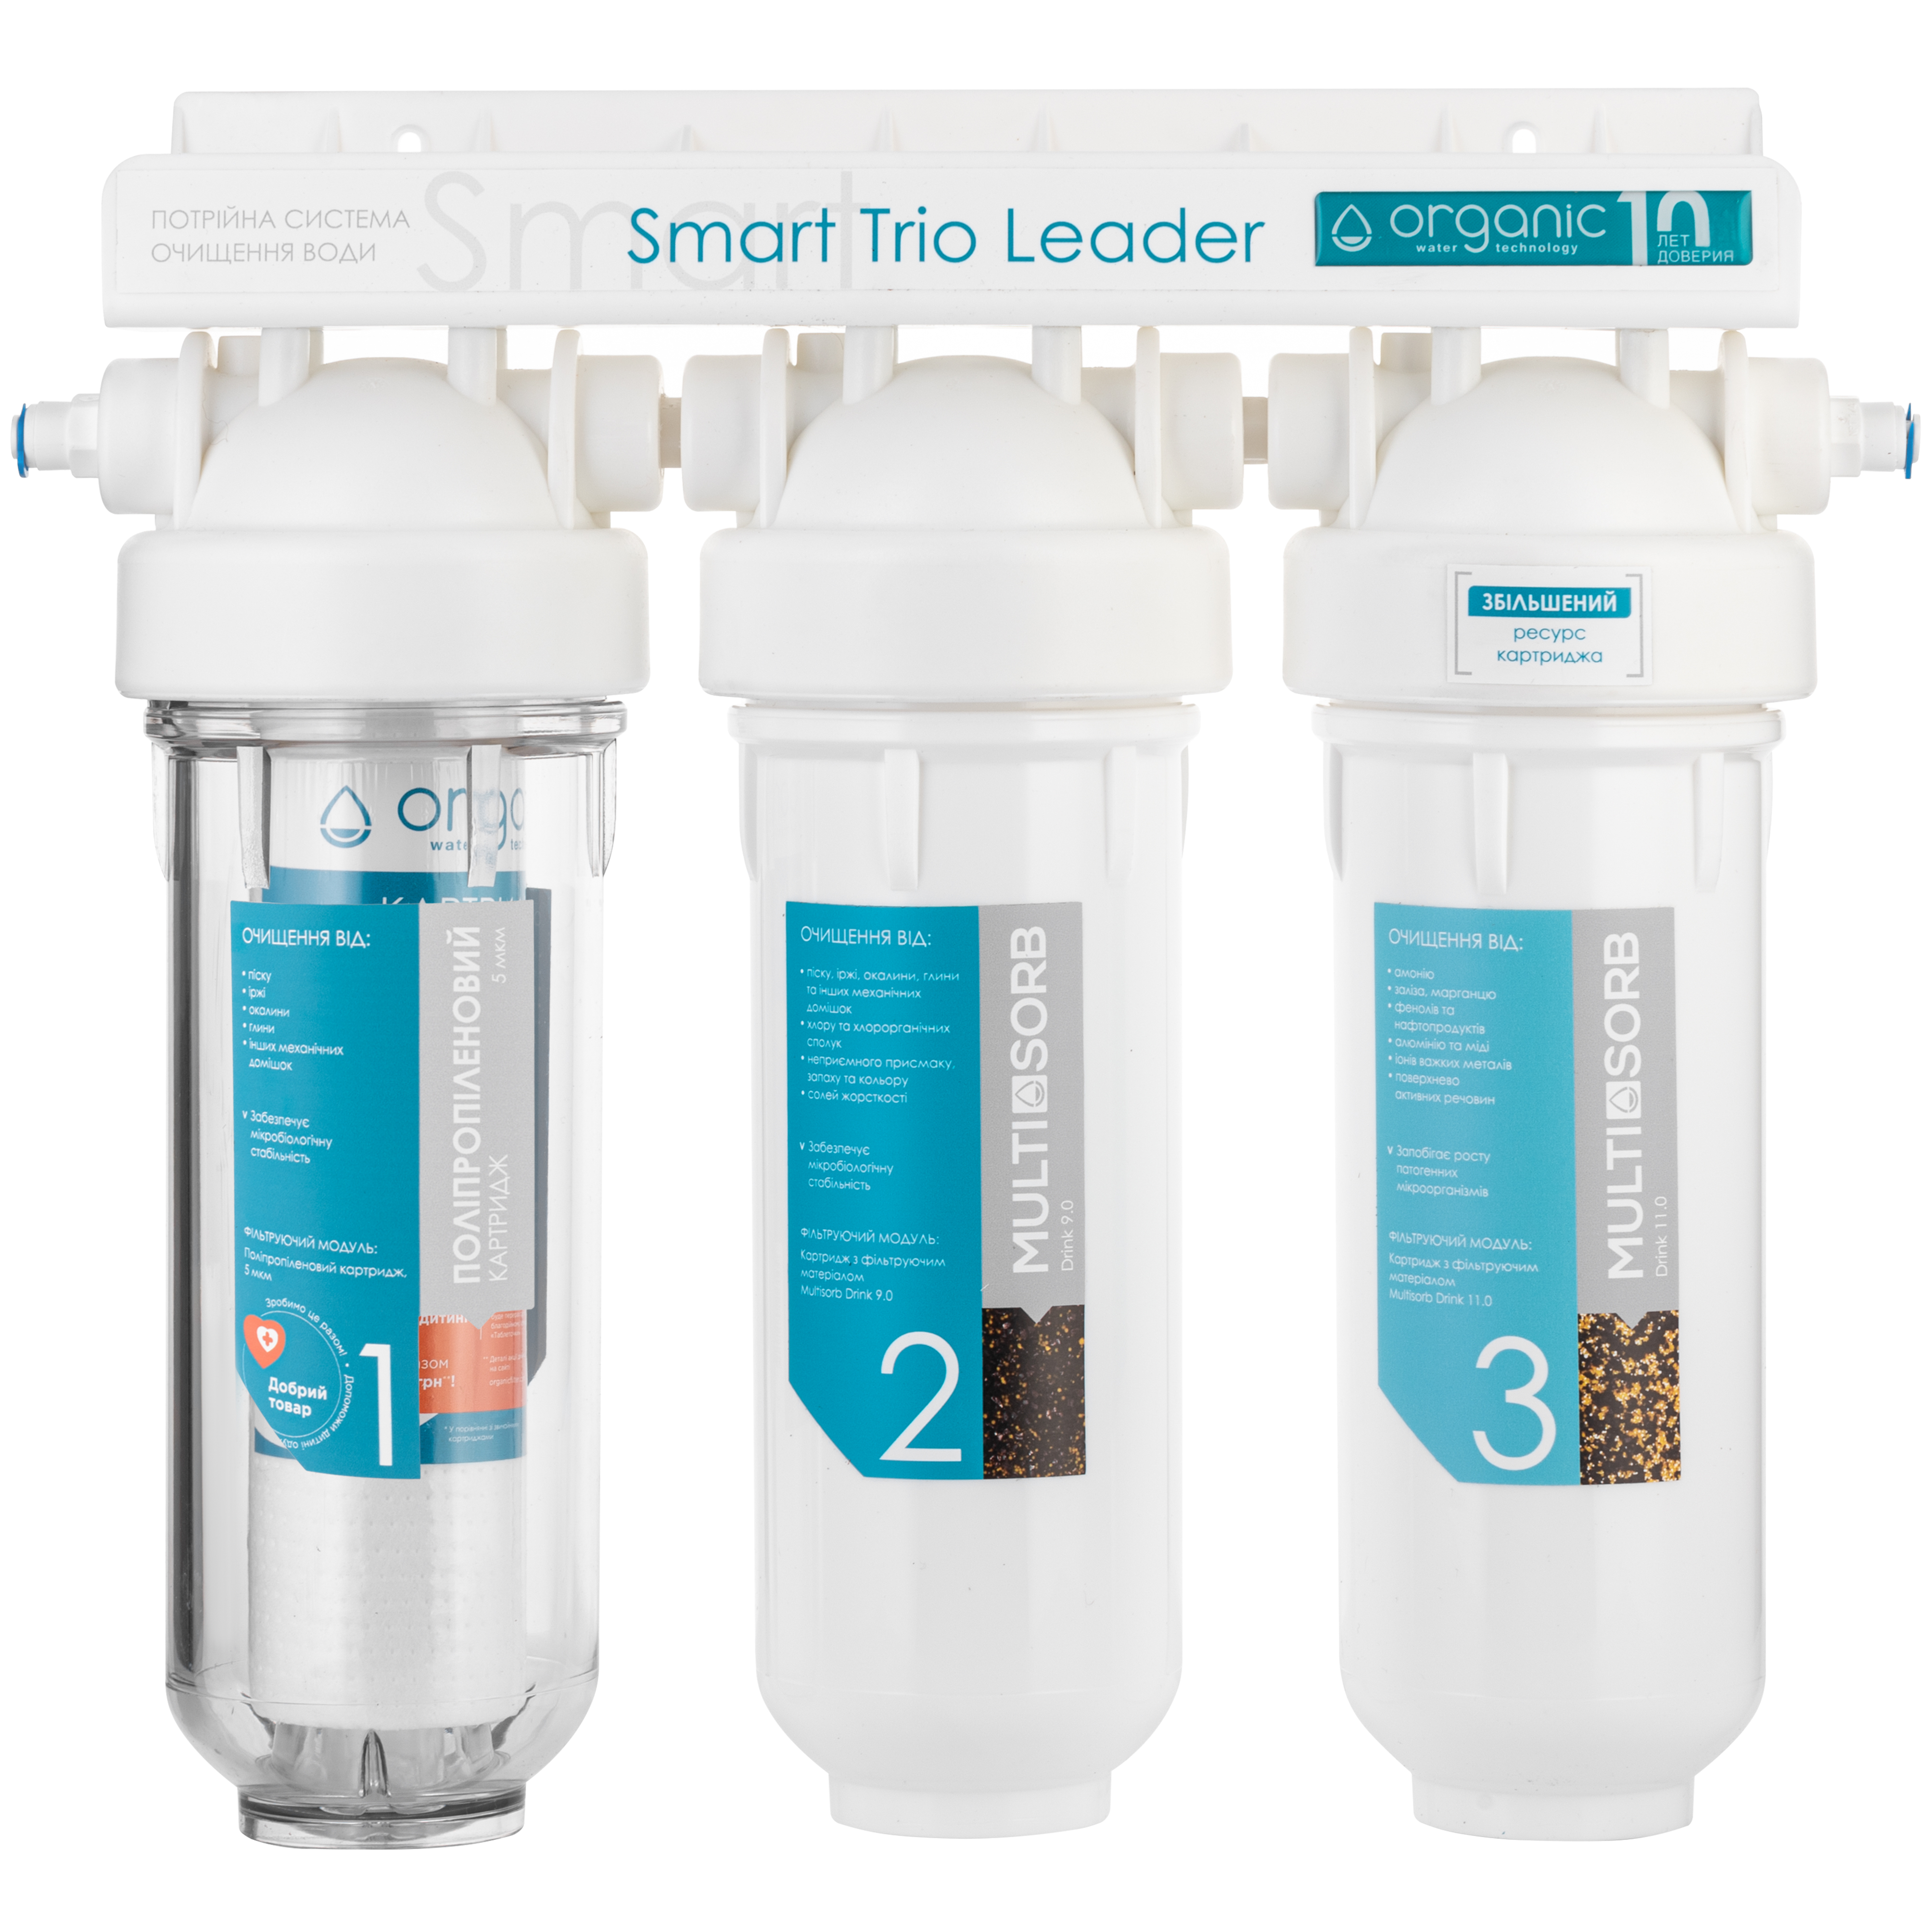 Цена фильтр для воды Organic Smart TRIO LEADER в Киеве